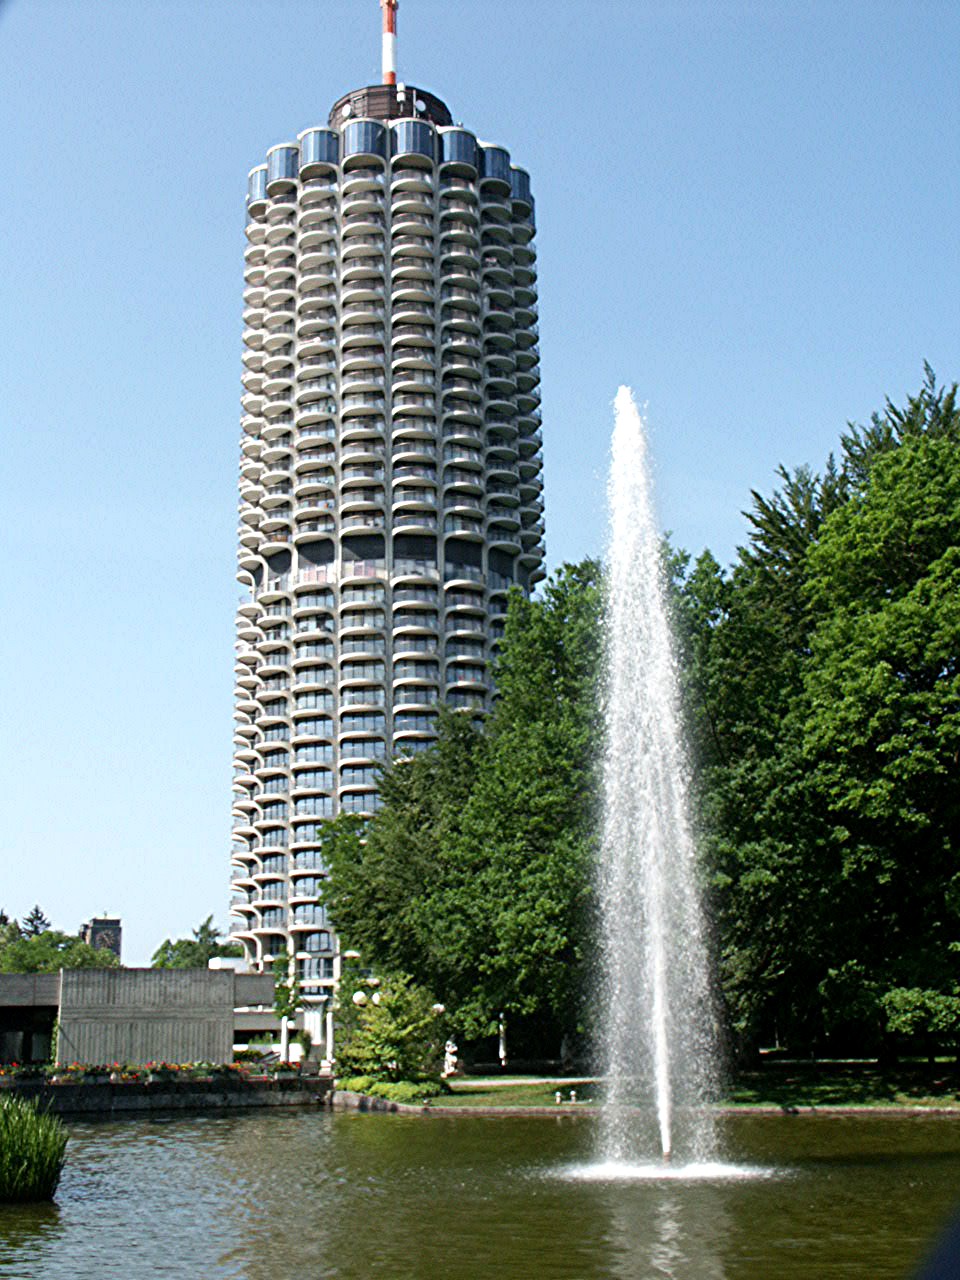 Hotelturm Augsburg